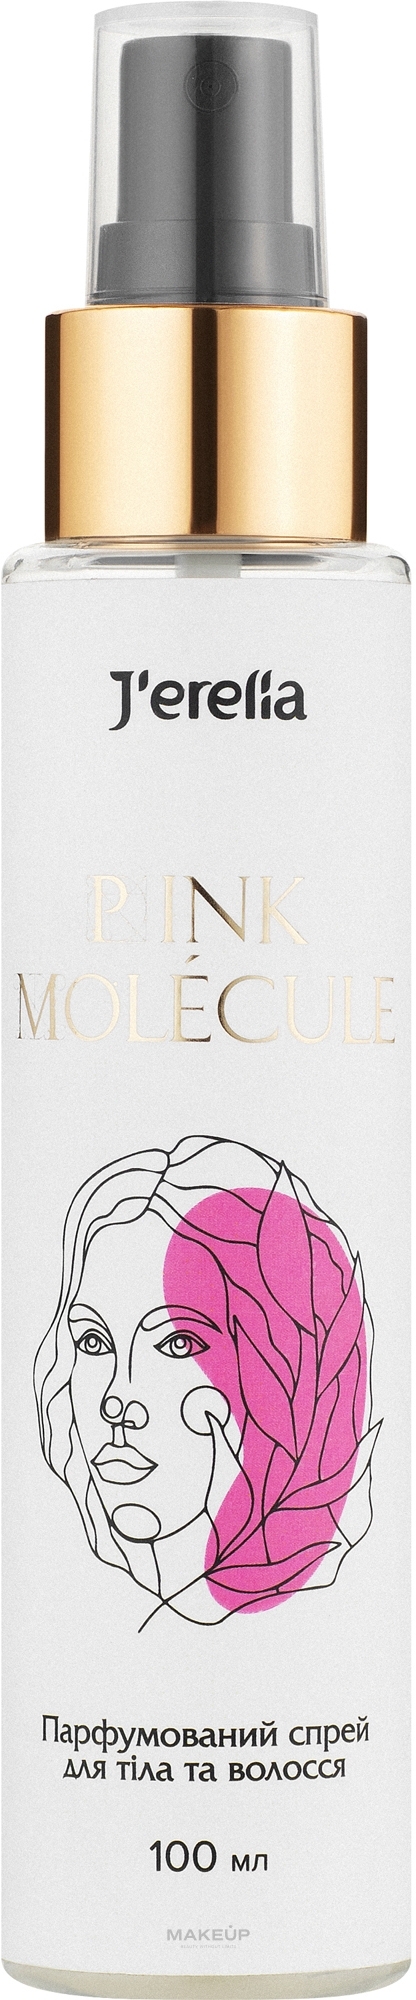 J'erelia Pink Molecule - Парфюмированный спрей для тела и волос — фото 100ml